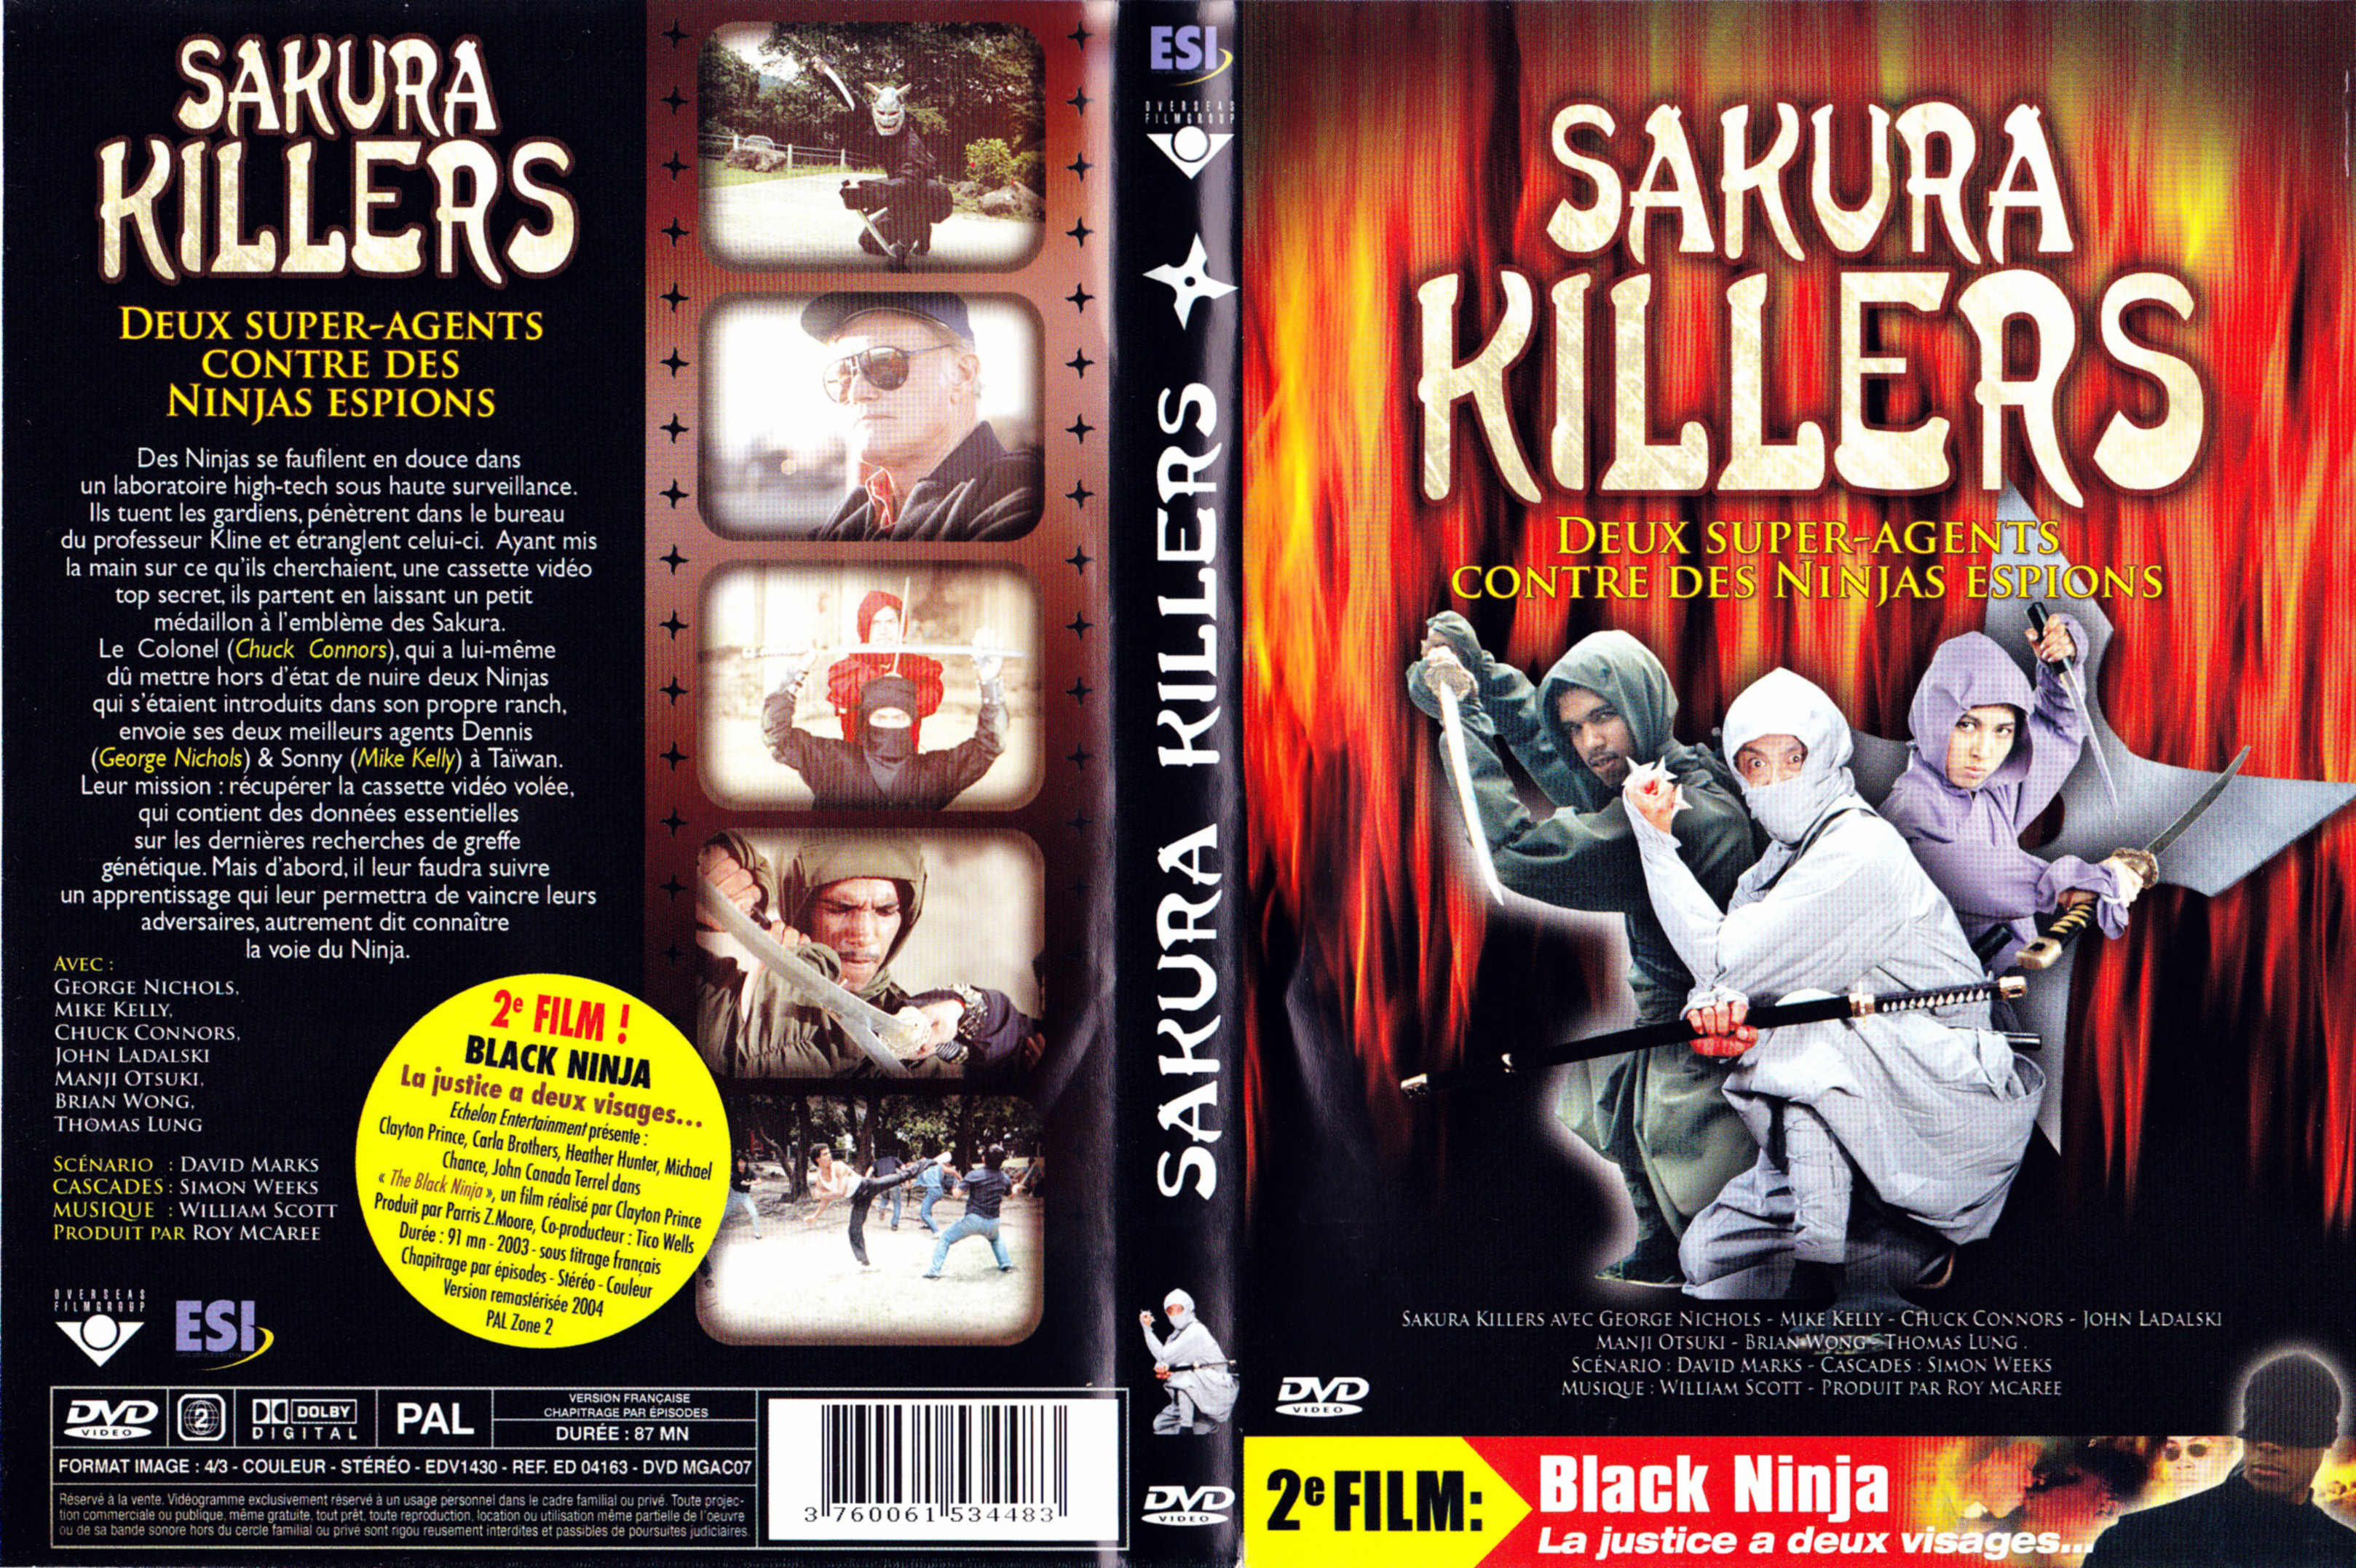 Jaquette DVD Sakura killers